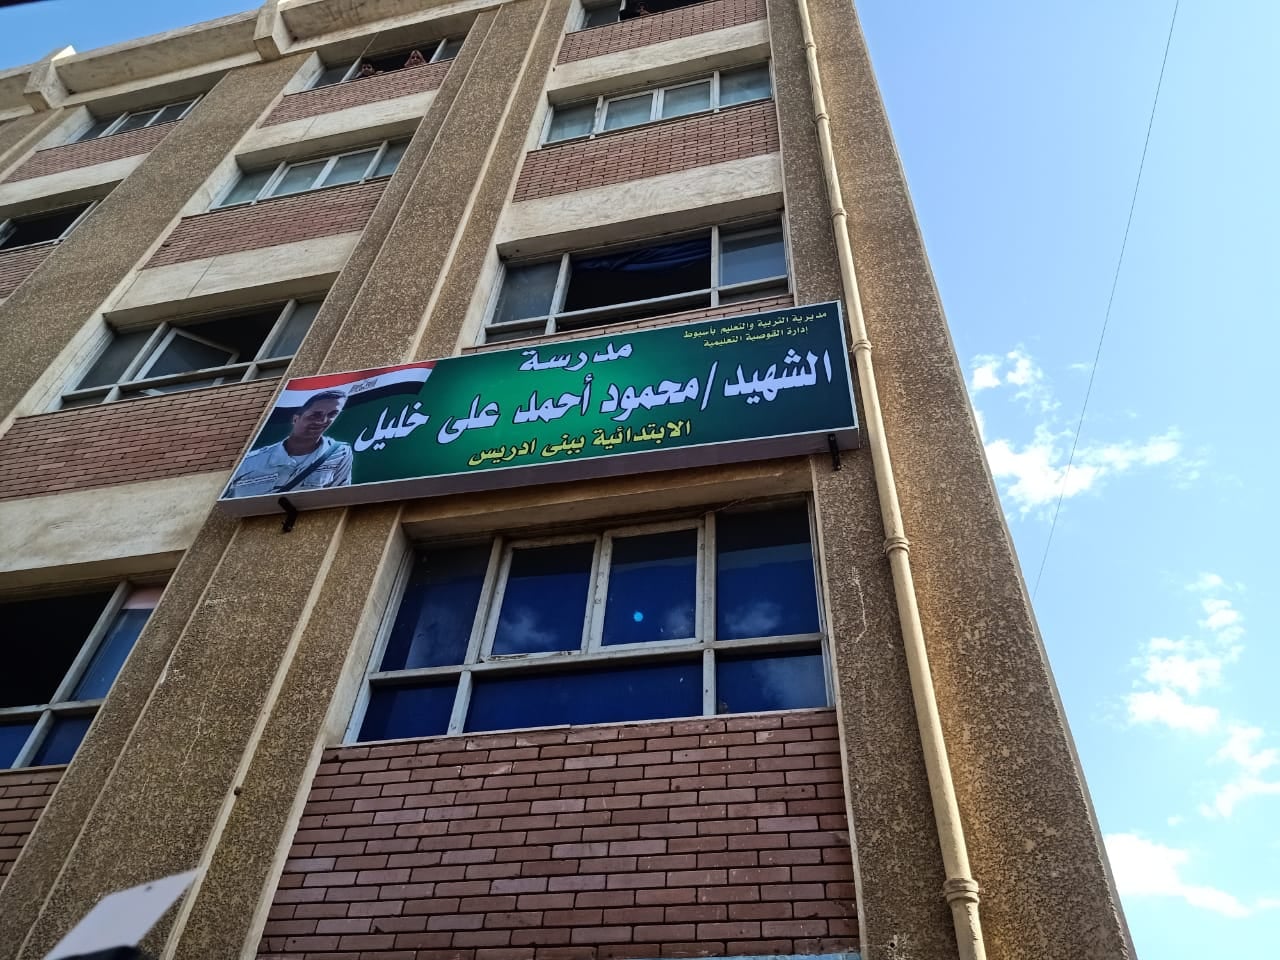   اطلاق اسم الشهيد «محمود أحمد علي خليل» على مدرسة بمسقط رأسه فى أسيوط